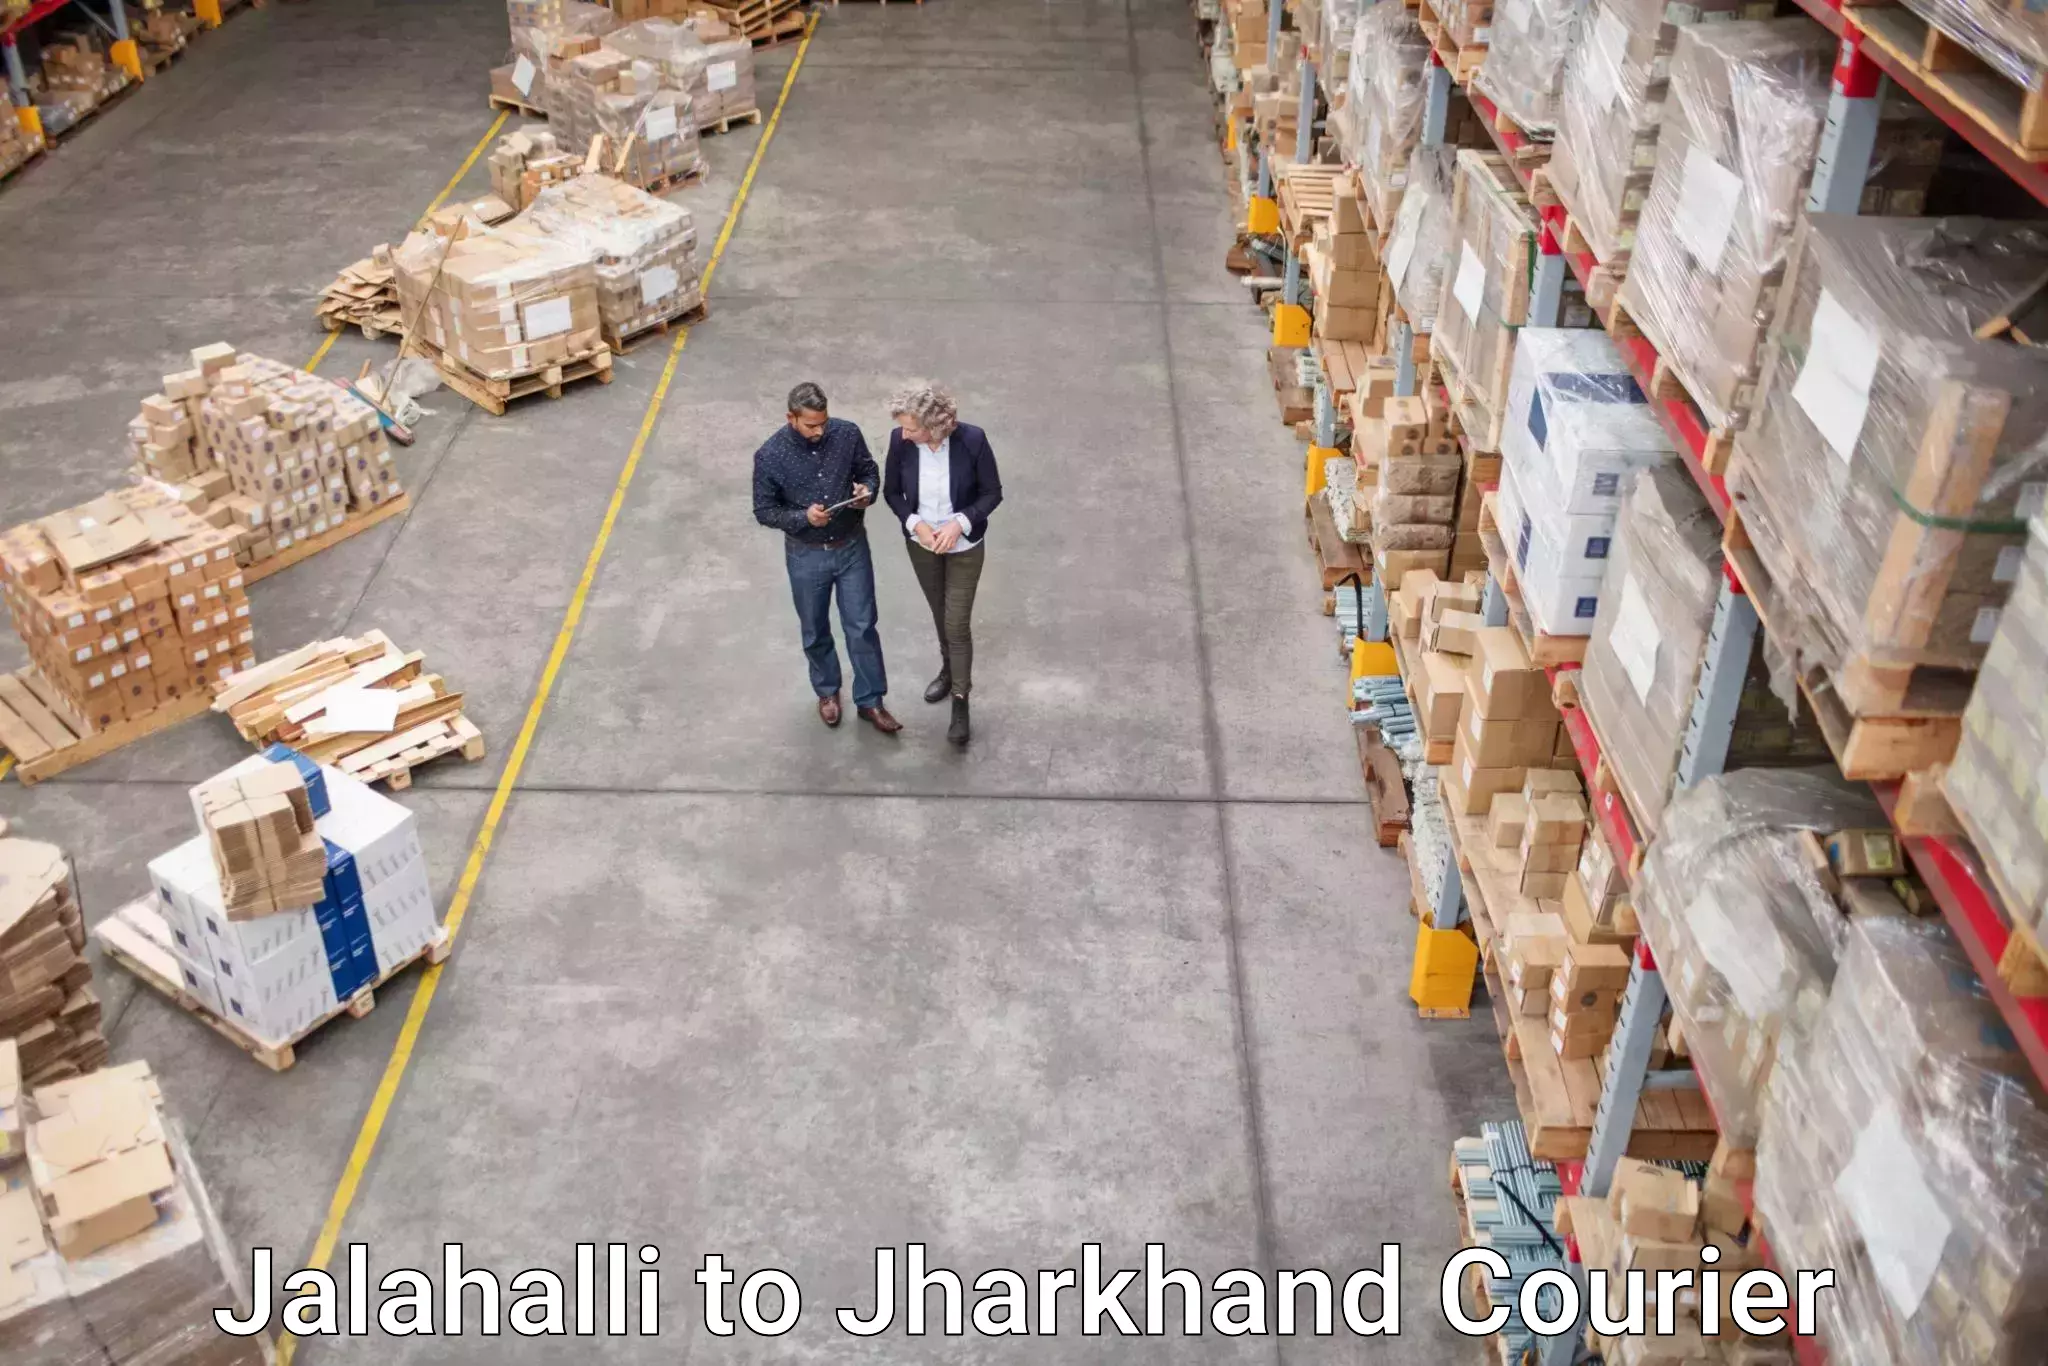 Courier service booking Jalahalli to Bundu